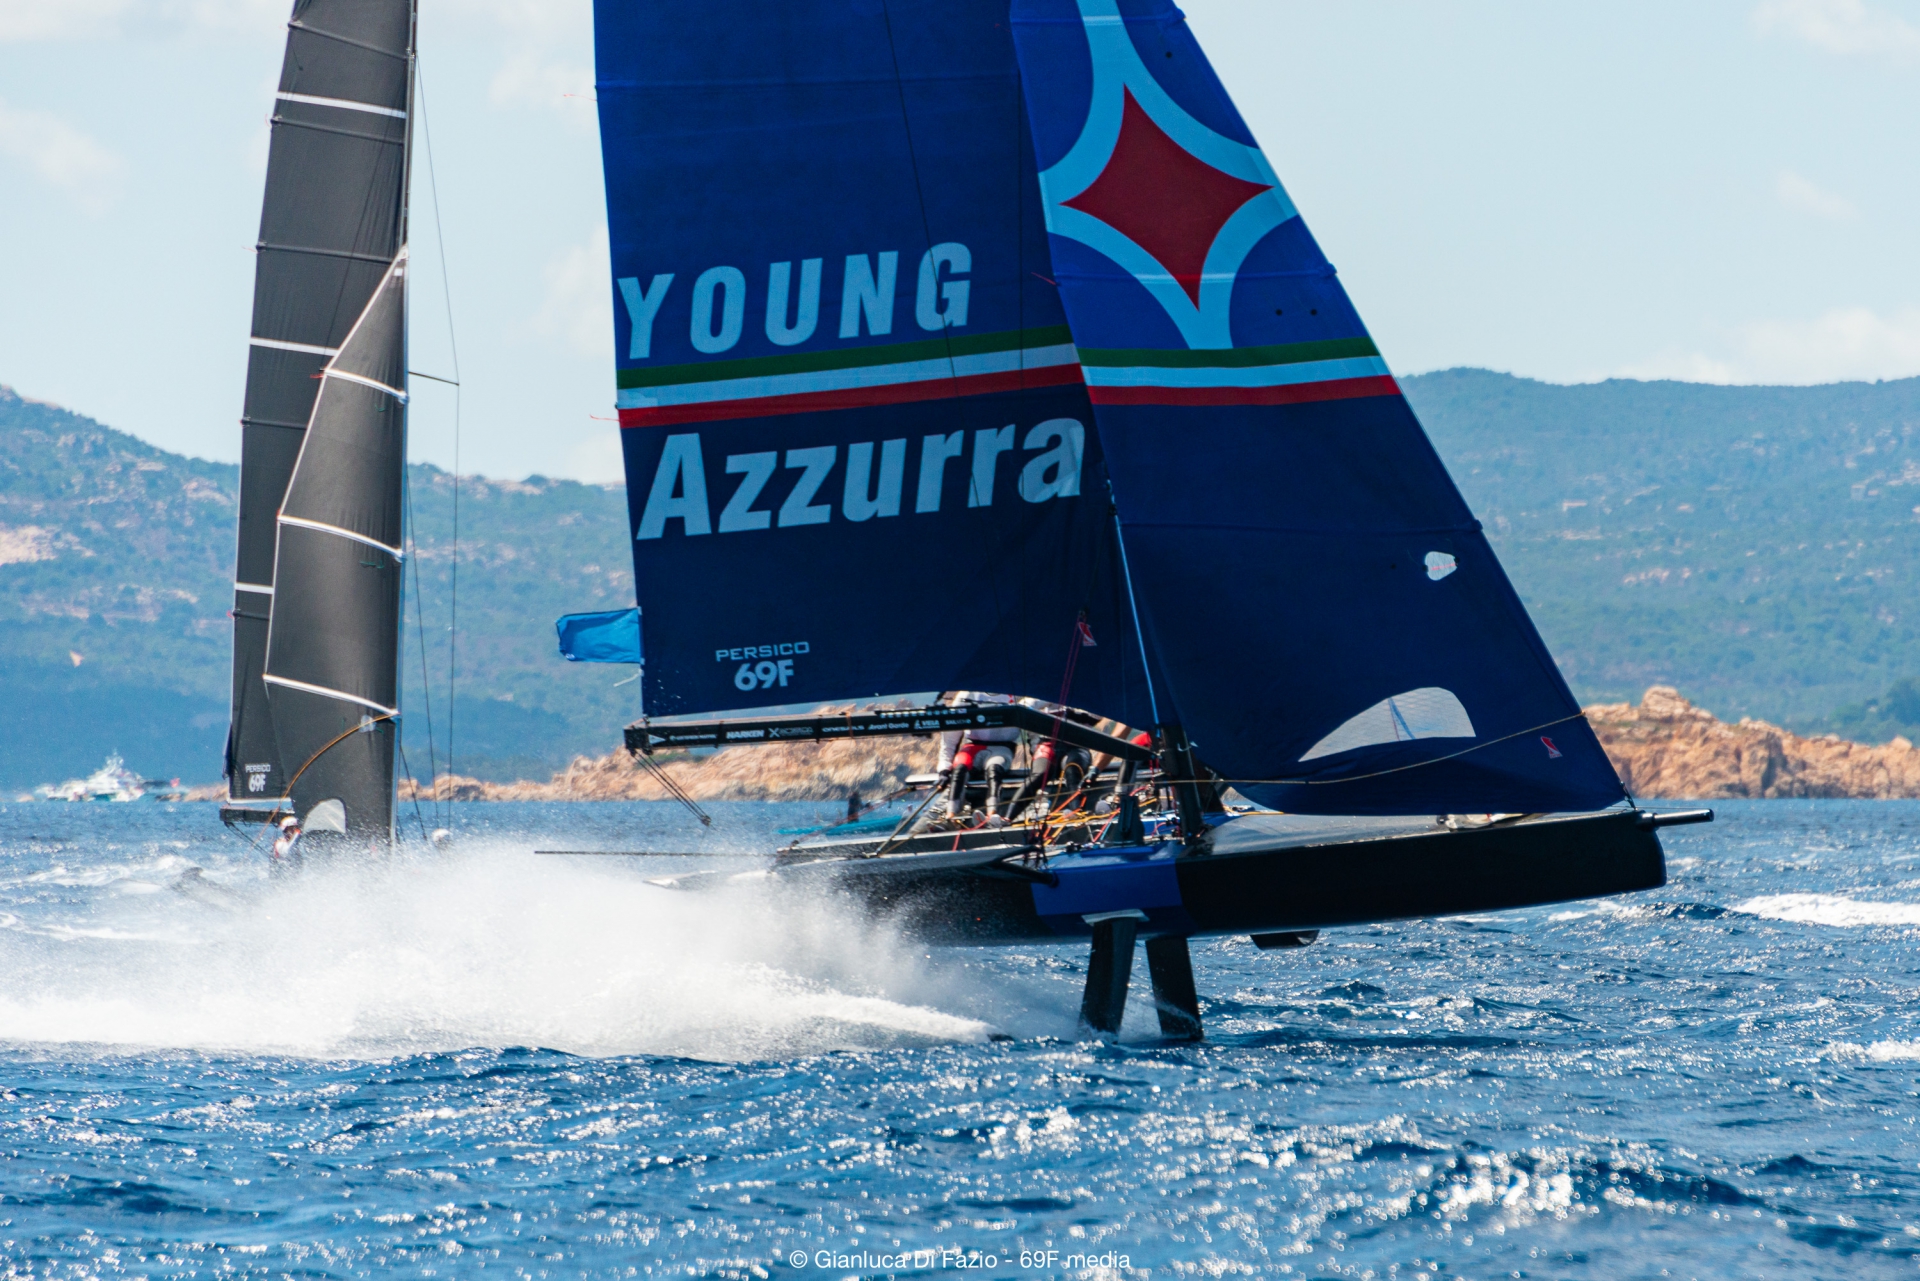 Young Azzurra conquista anche il Persico 69F Cup Grand Prix 2.2 - NEWS - Yacht Club Costa Smeralda